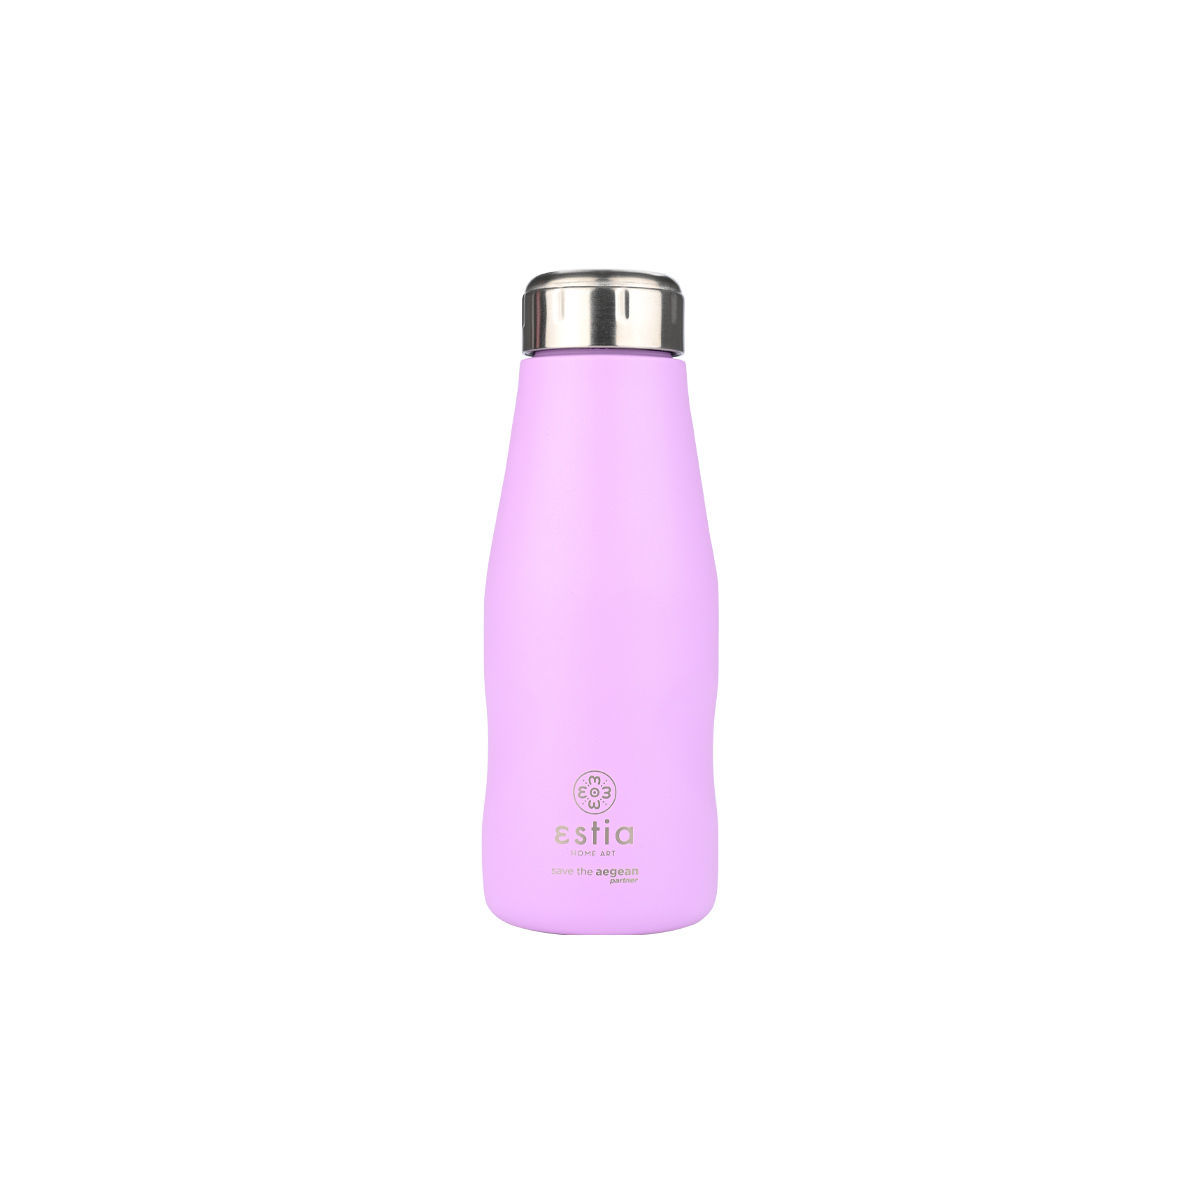 Θερμός-Μπουκάλι Ανοξείδωτο Lavender Purple Flask Save The Aegean Estia 350ml-6,5×6,5×18,5εκ. 01-22358 (Υλικό: Ανοξείδωτο, Χρώμα: Μωβ) – estia – 01-22358